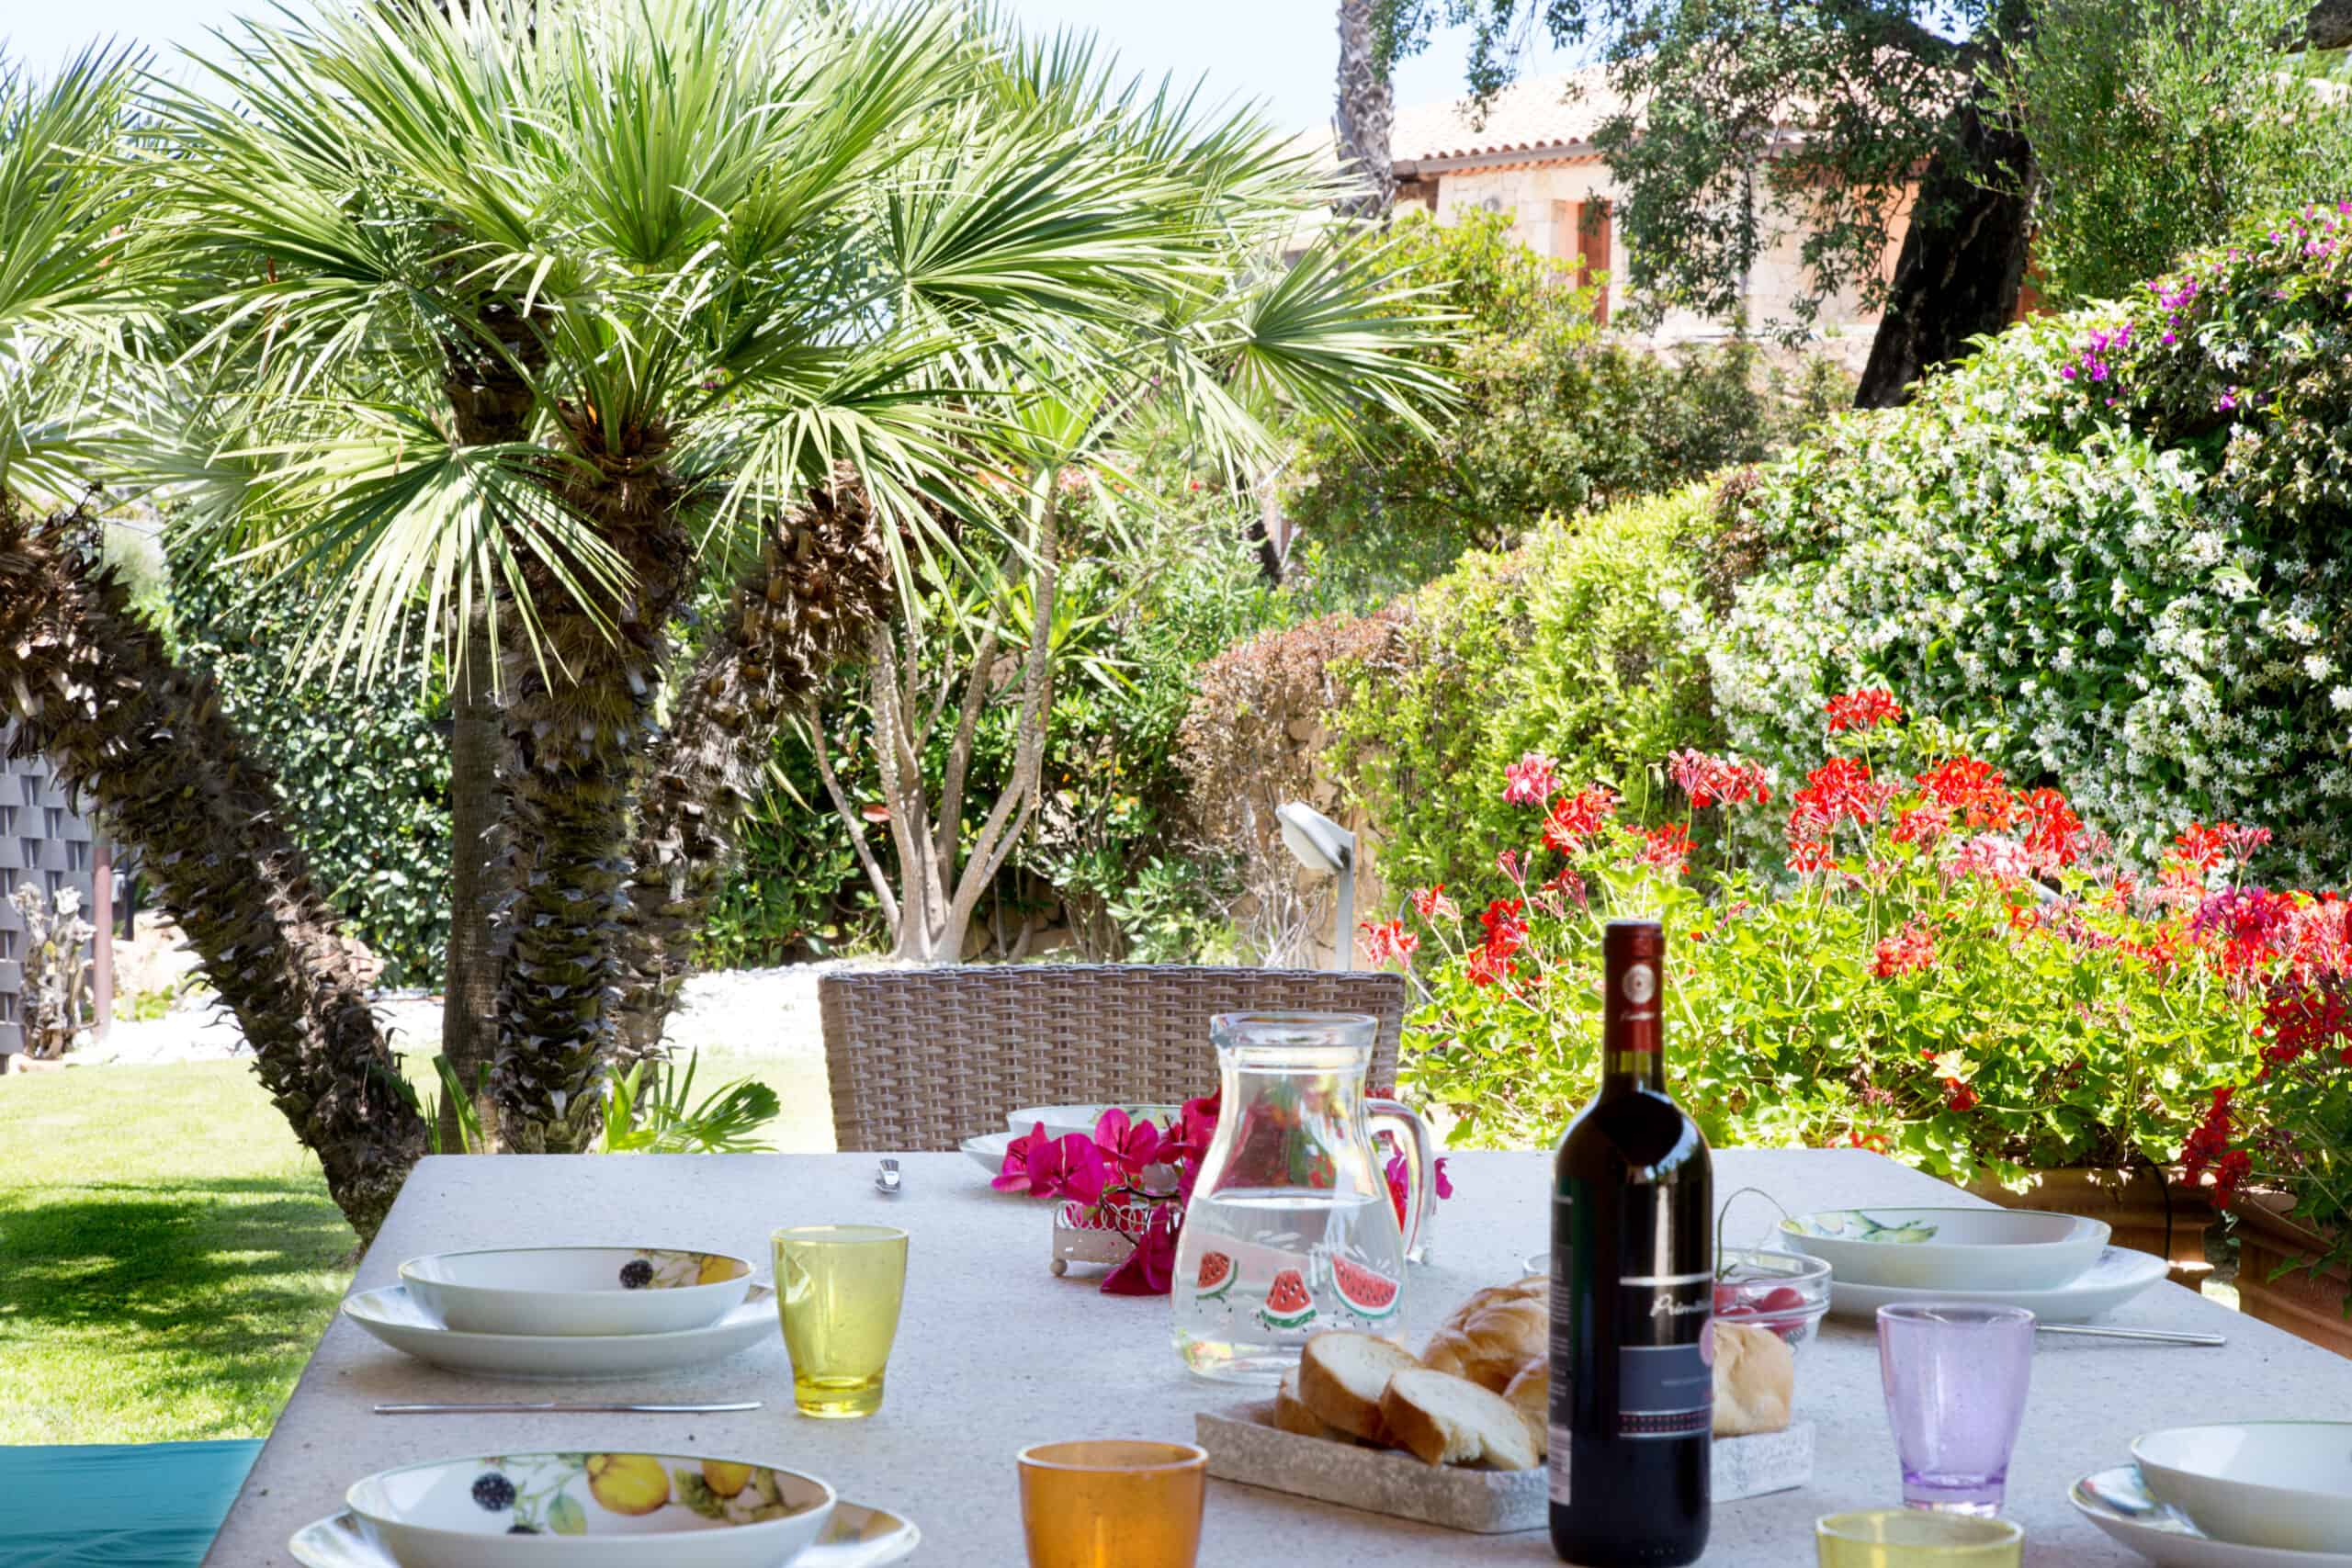 Stupendous Villa For Rent With Pool And Sea View in Capo Coda Cavallo Sardinia ref Clara